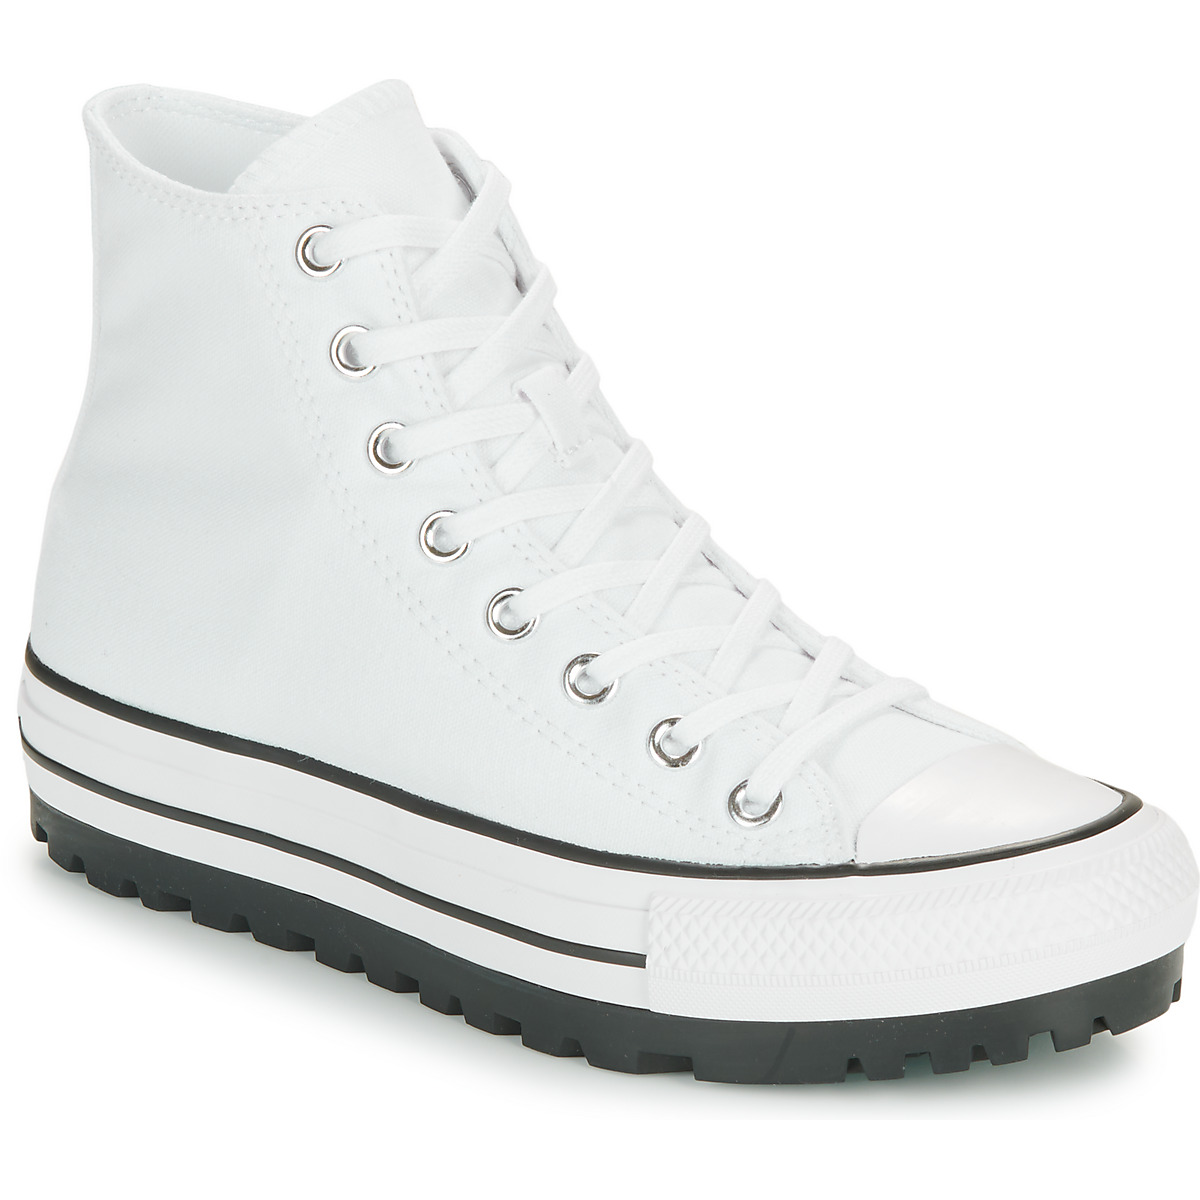 Cipők Magas szárú edzőcipők Converse CHUCK TAYLOR ALL STAR CITY TREK SEASONAL CANVAS Fehér